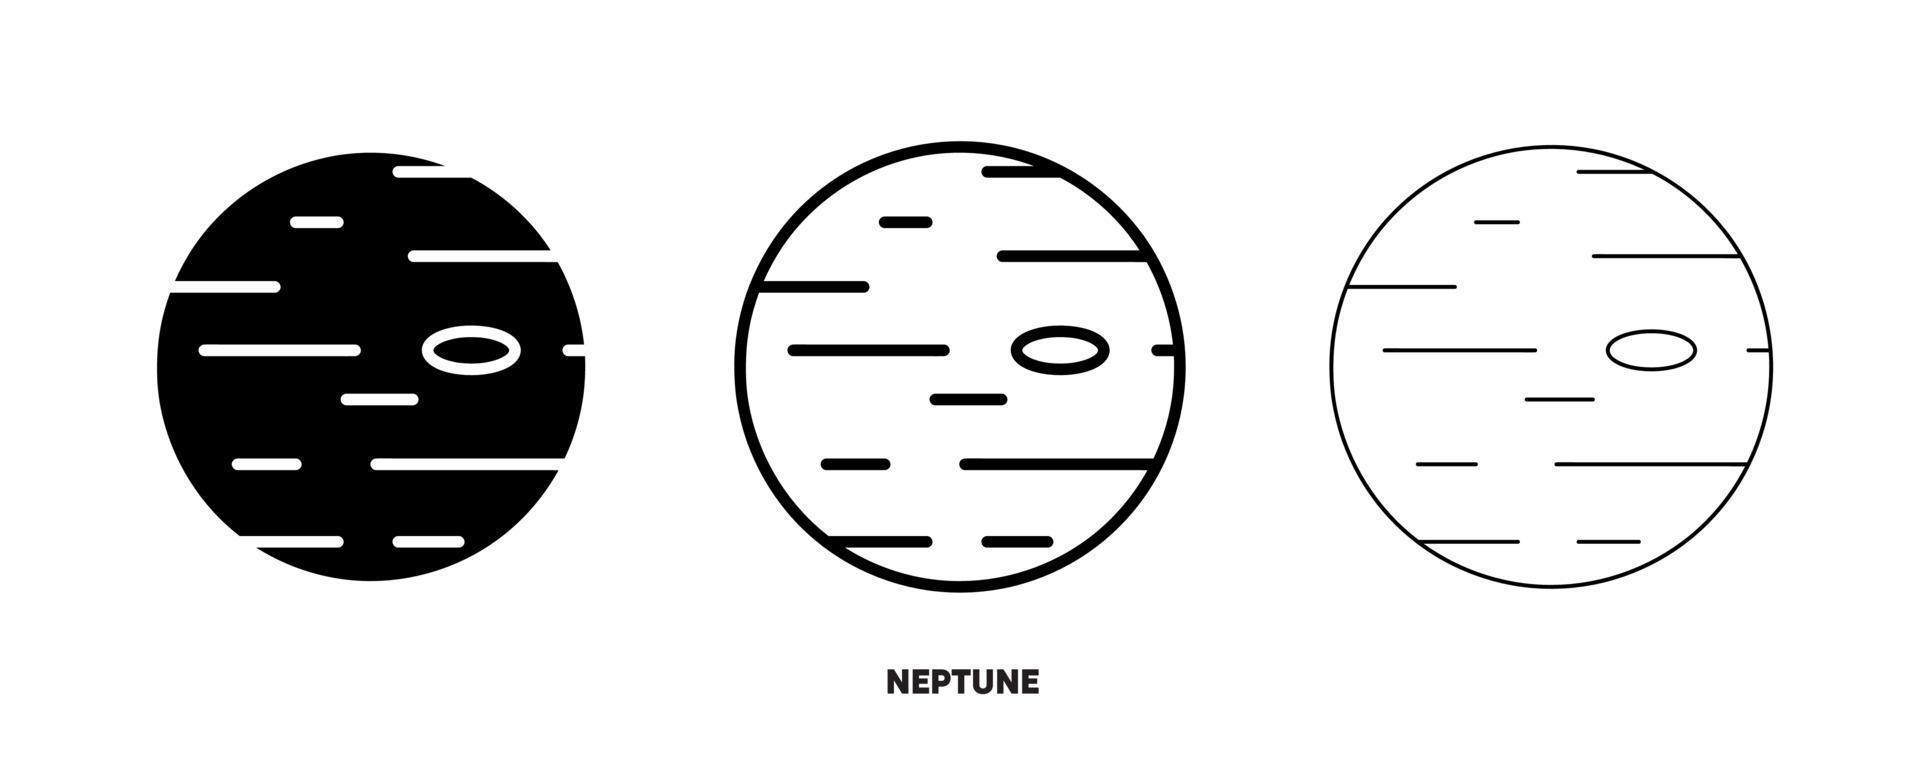 Neptun-Planeten-Icon-Vektor. einfaches Planet-Neptun-Zeichen im modernen Designstil und Logokunst für Website und mobile App. bearbeitbare Zeichnung und Silhouette in einem. vektor